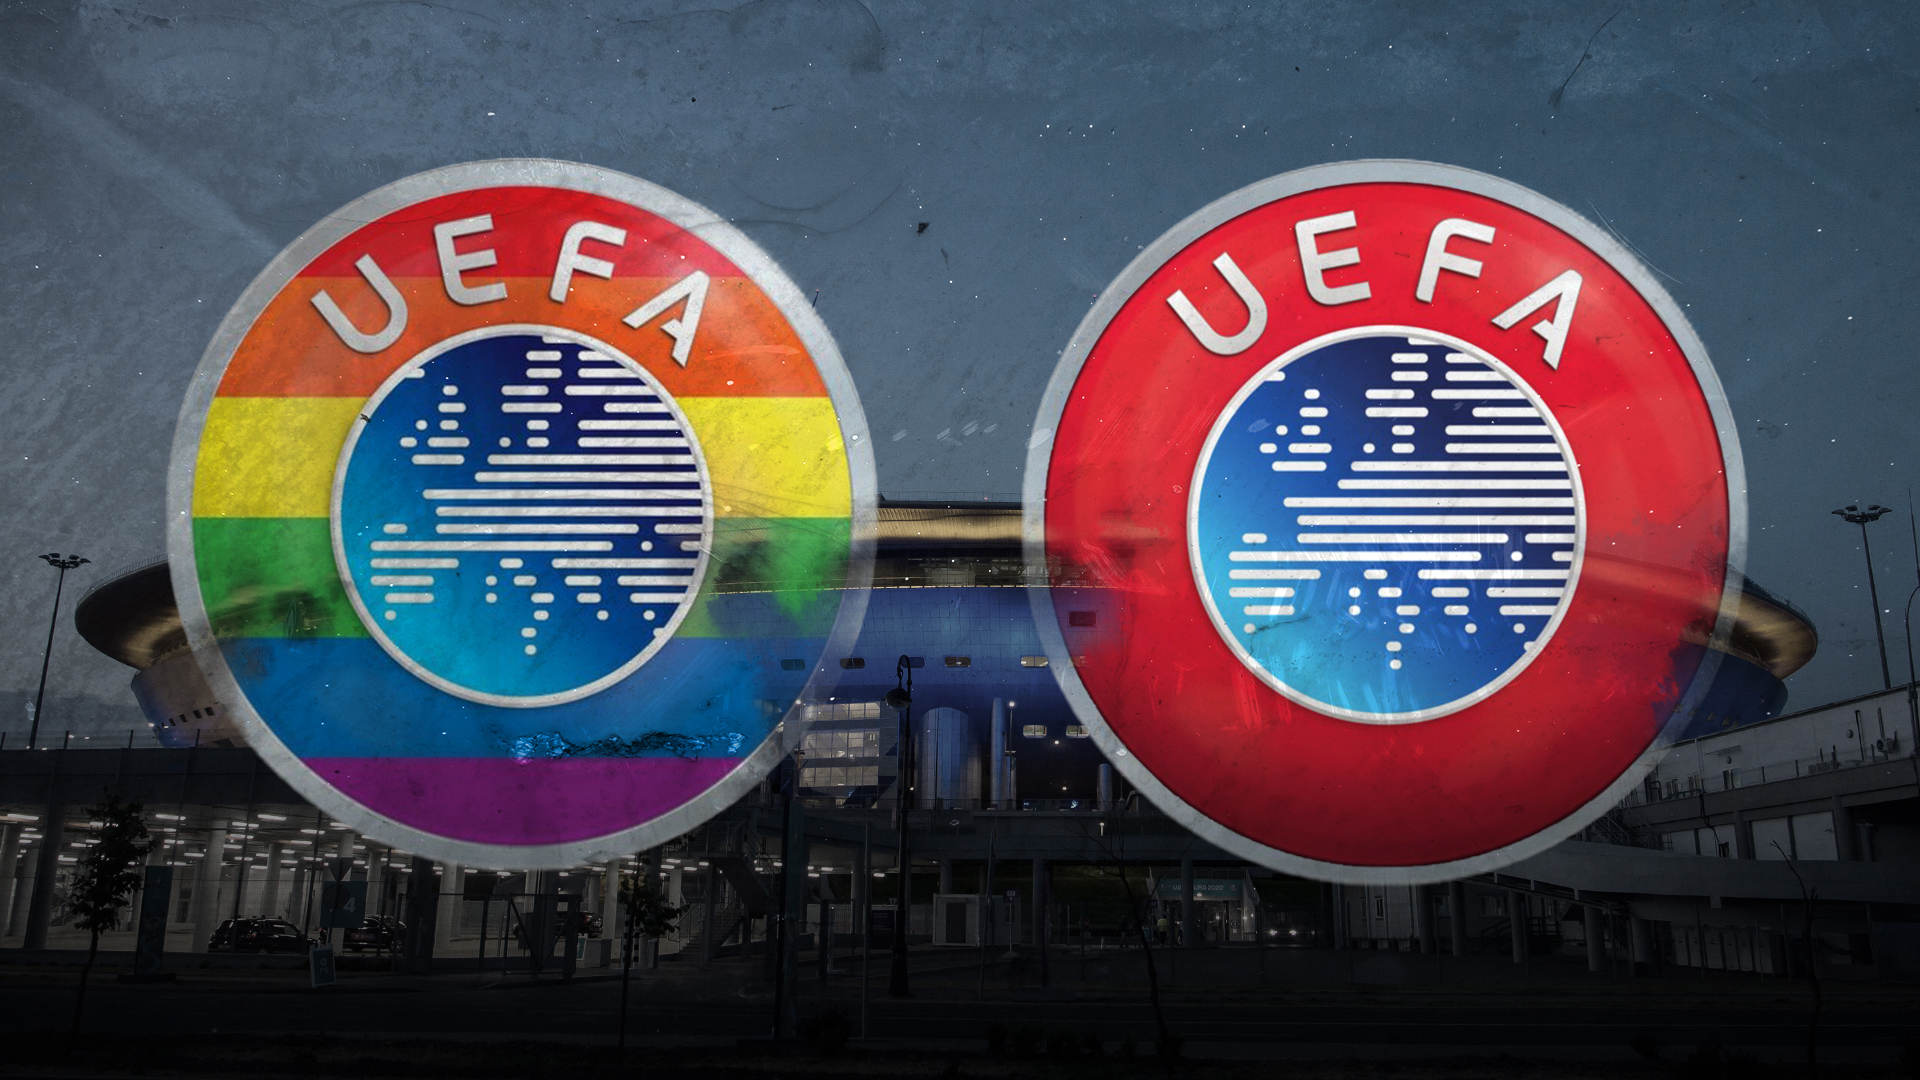 Stadion mit Werbebanden in Regenbogenfarben